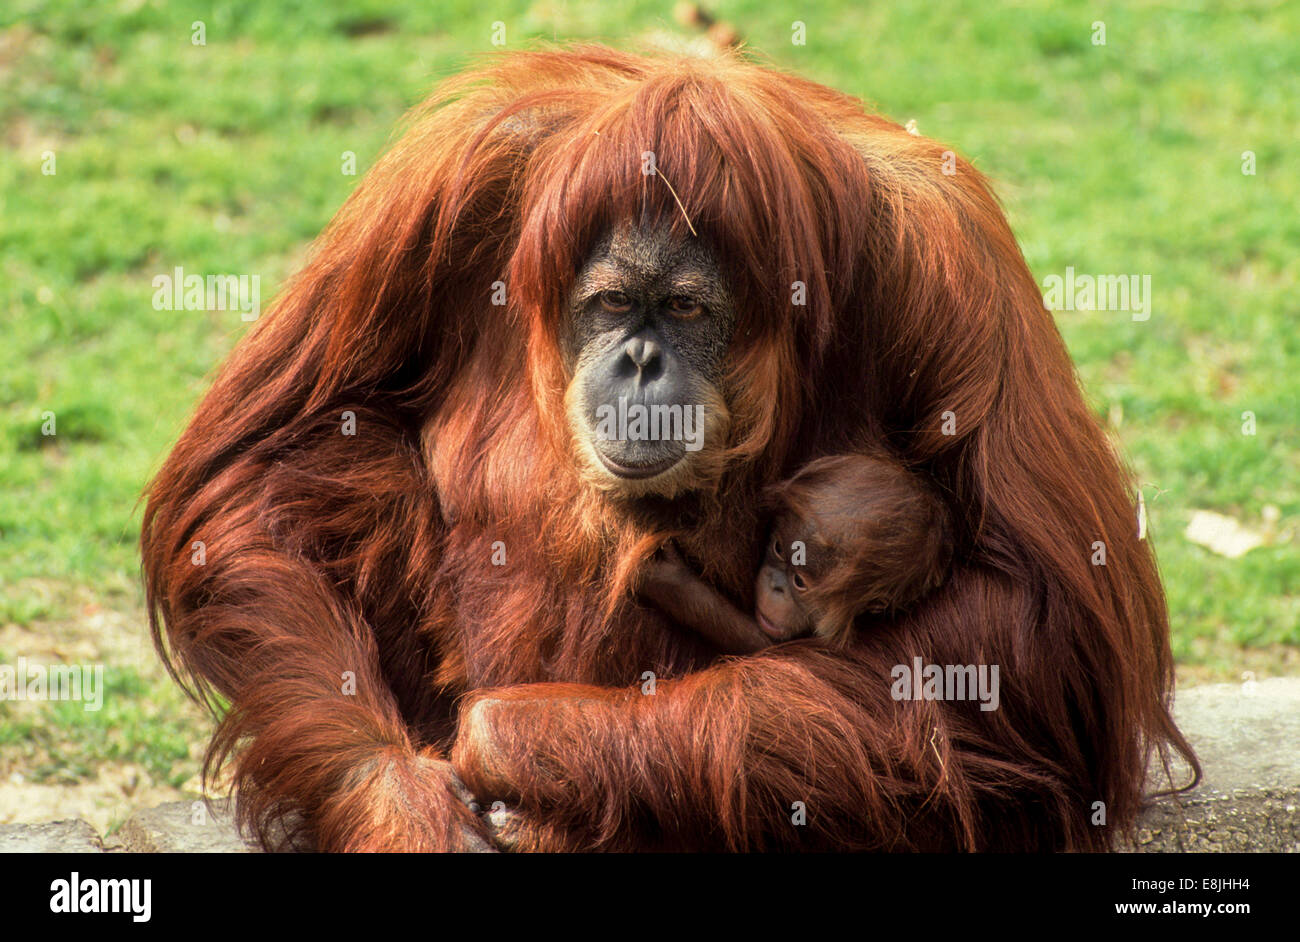 L'orang-outan de Sumatra (Pongo abelii ou Pongo pygmaeus abelii) Mère avec enfant dans un zoo Banque D'Images